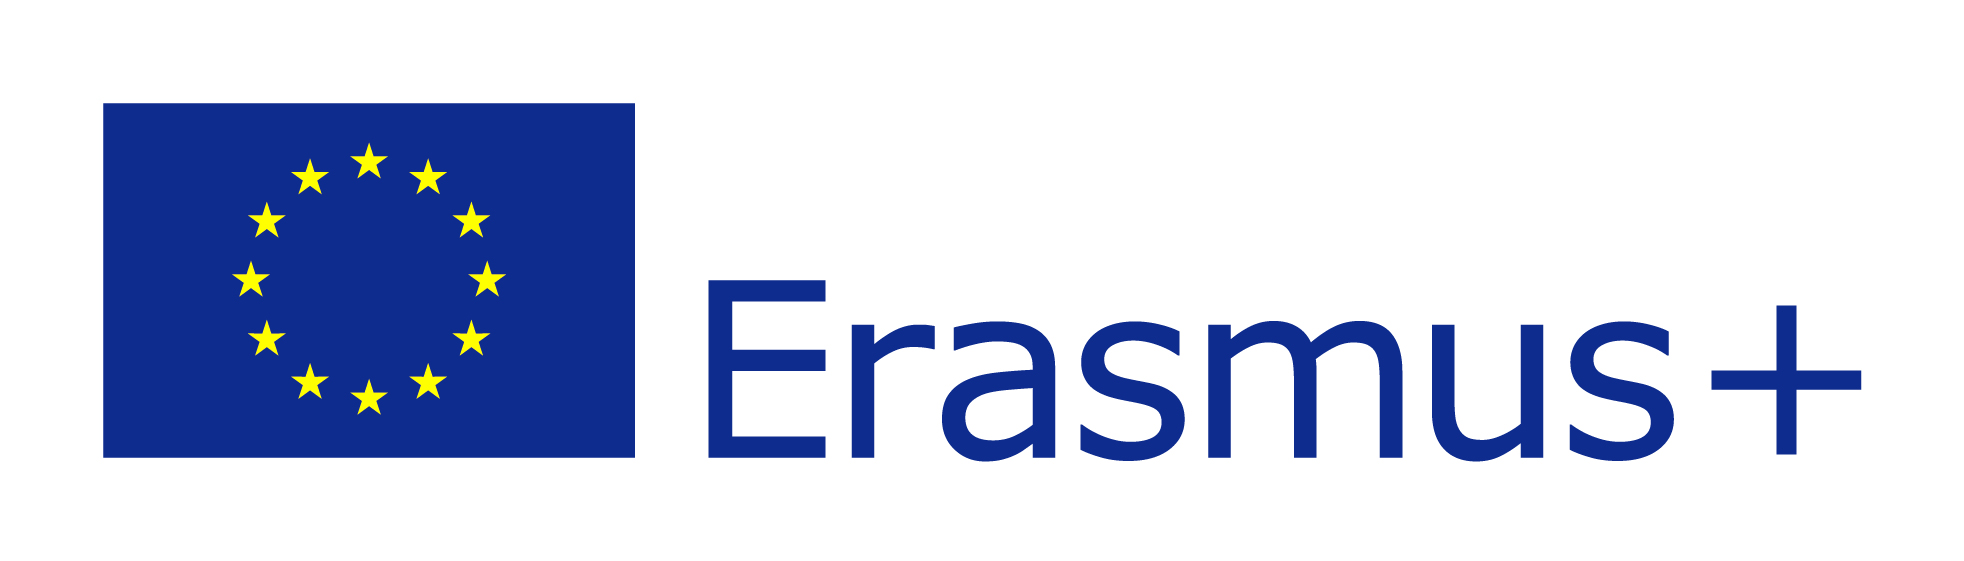 Erasmus+-logo-colour.jpg